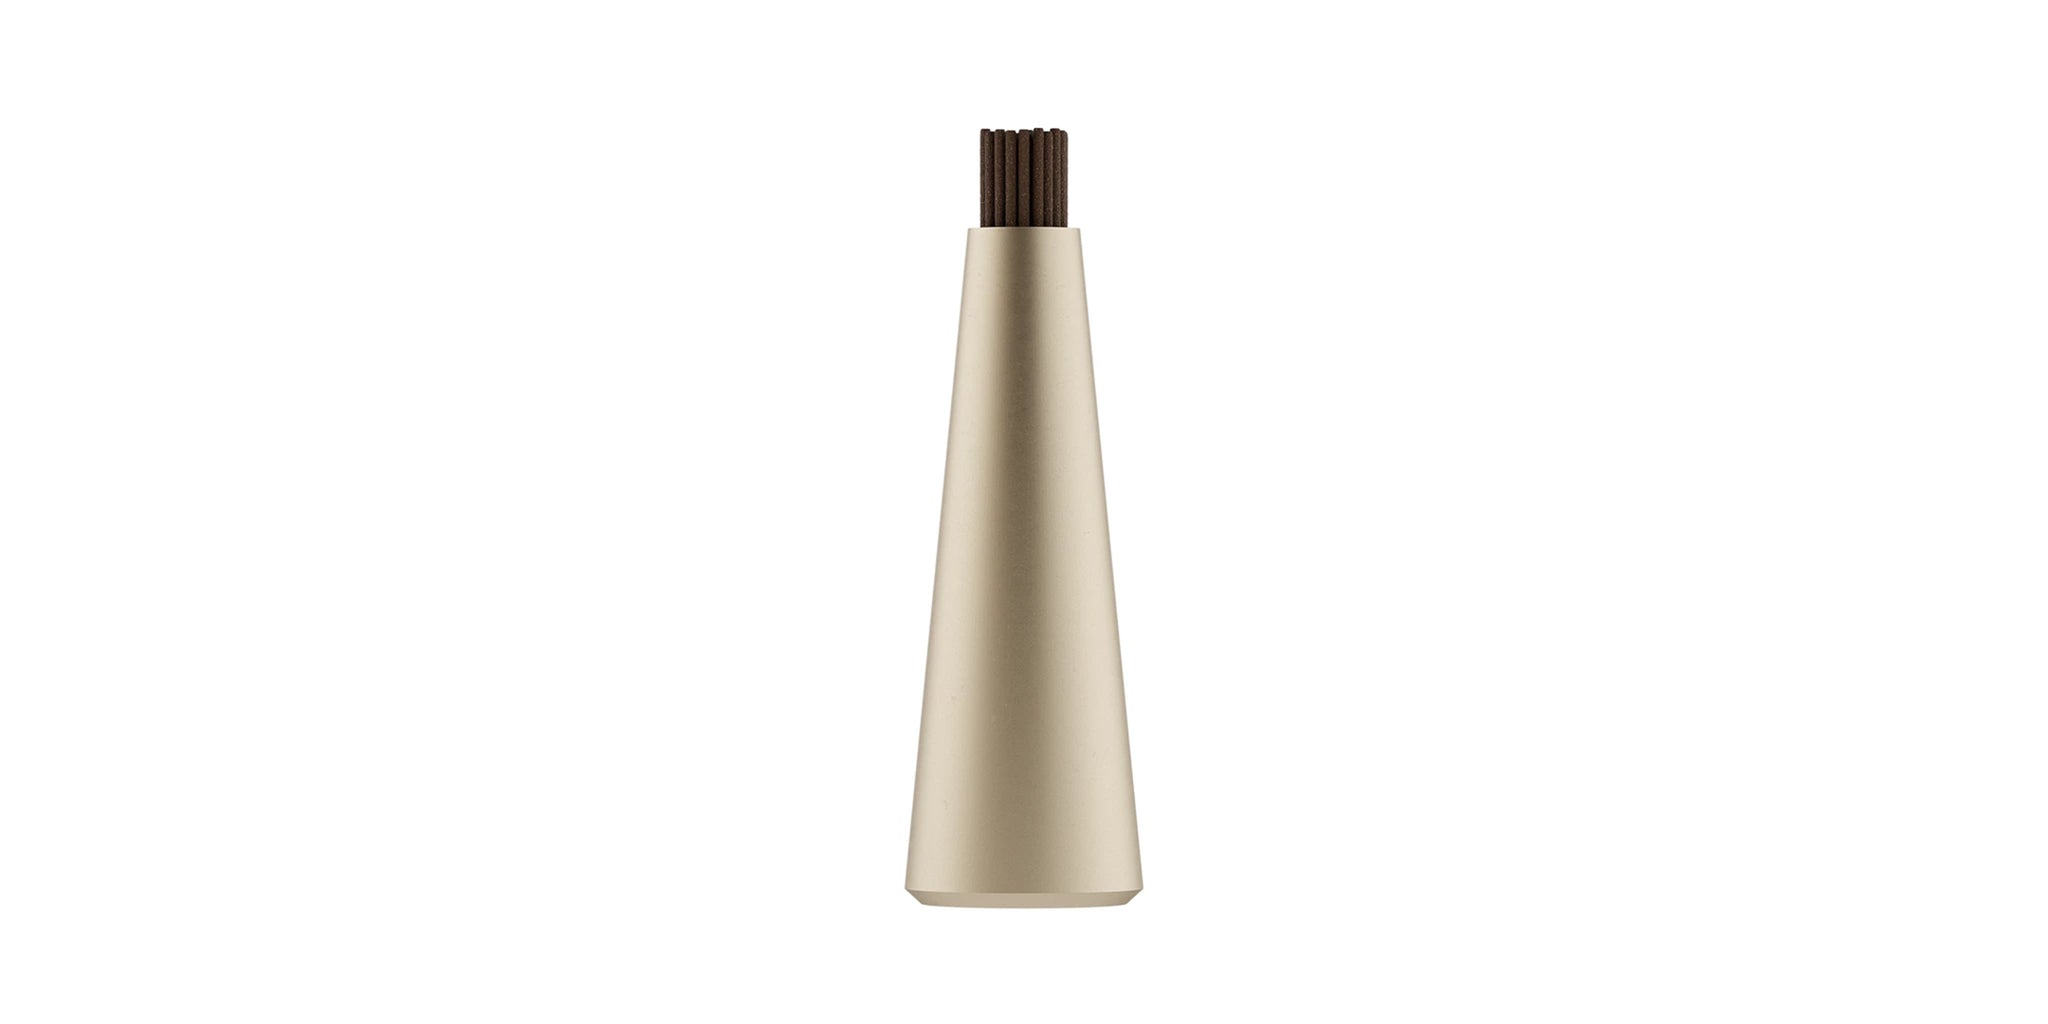 Aluminum Incense Vase - brass